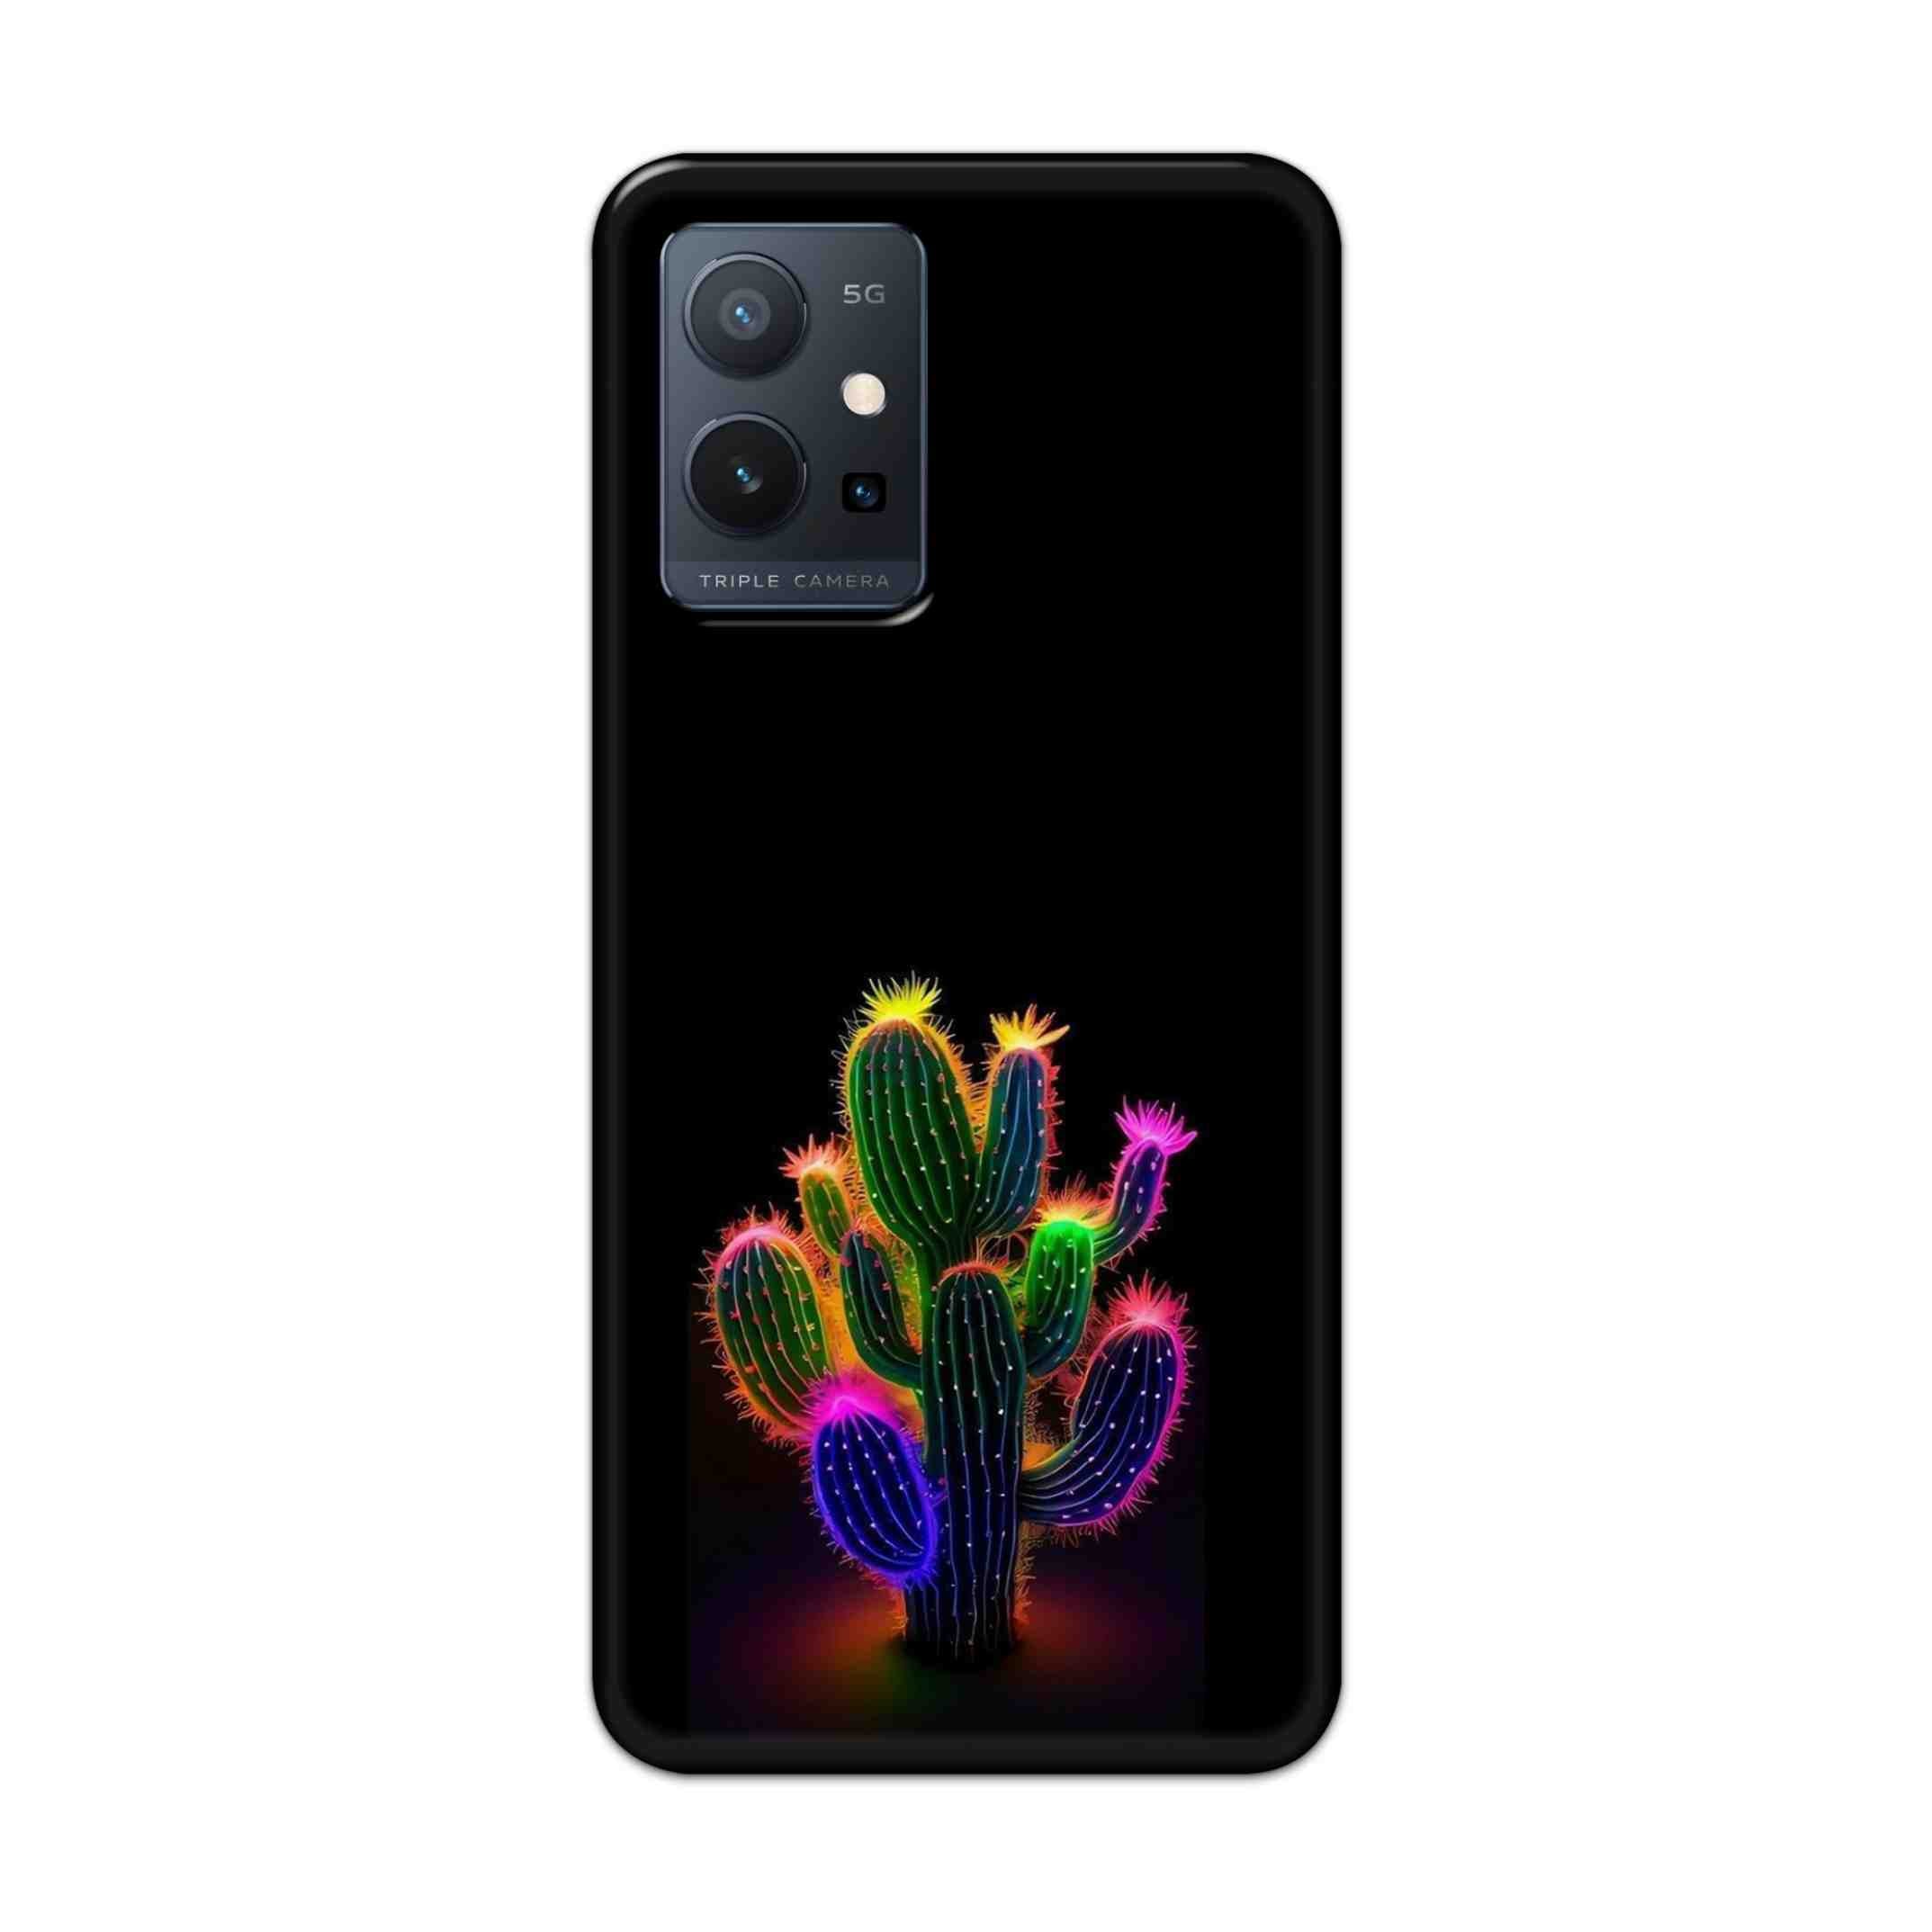 Buy Neon Flower Hard Back Mobile Phone Case Cover For Vivo T1 5G Online